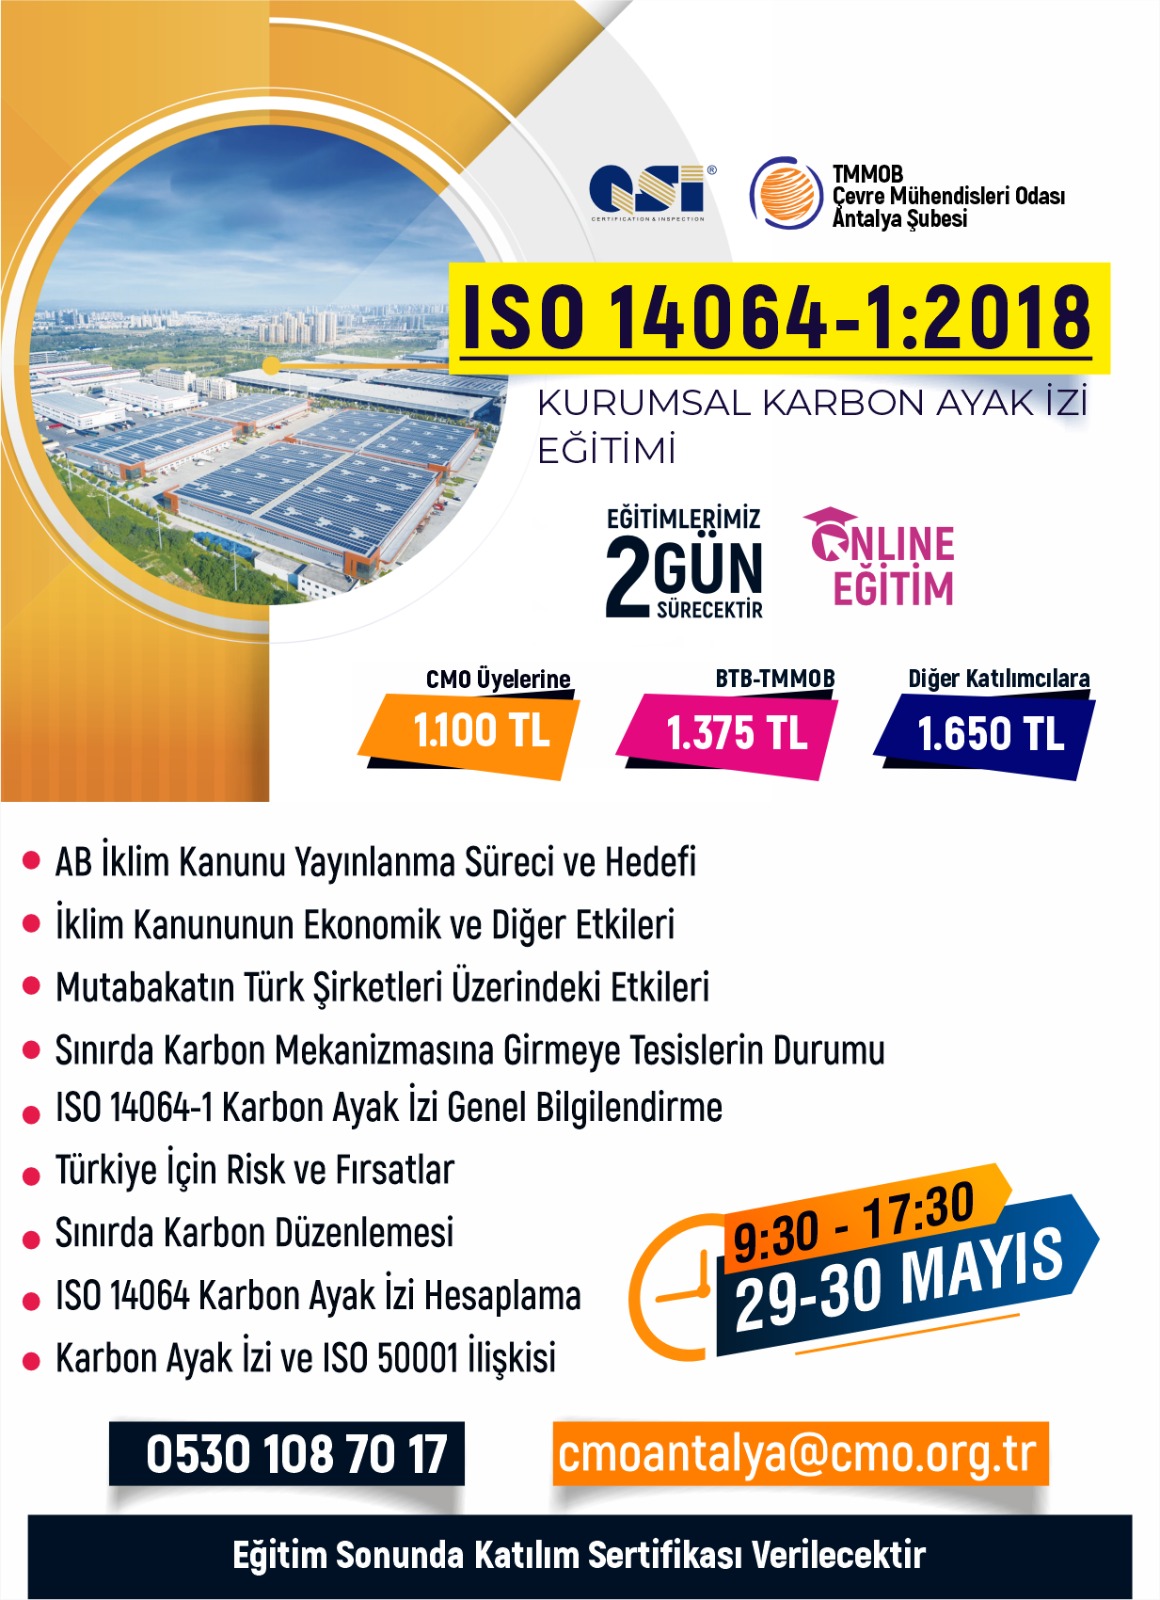 ISO 14064-1 :2018 KURUMSAL KARBON AYAK İZİ EĞİTİMİ